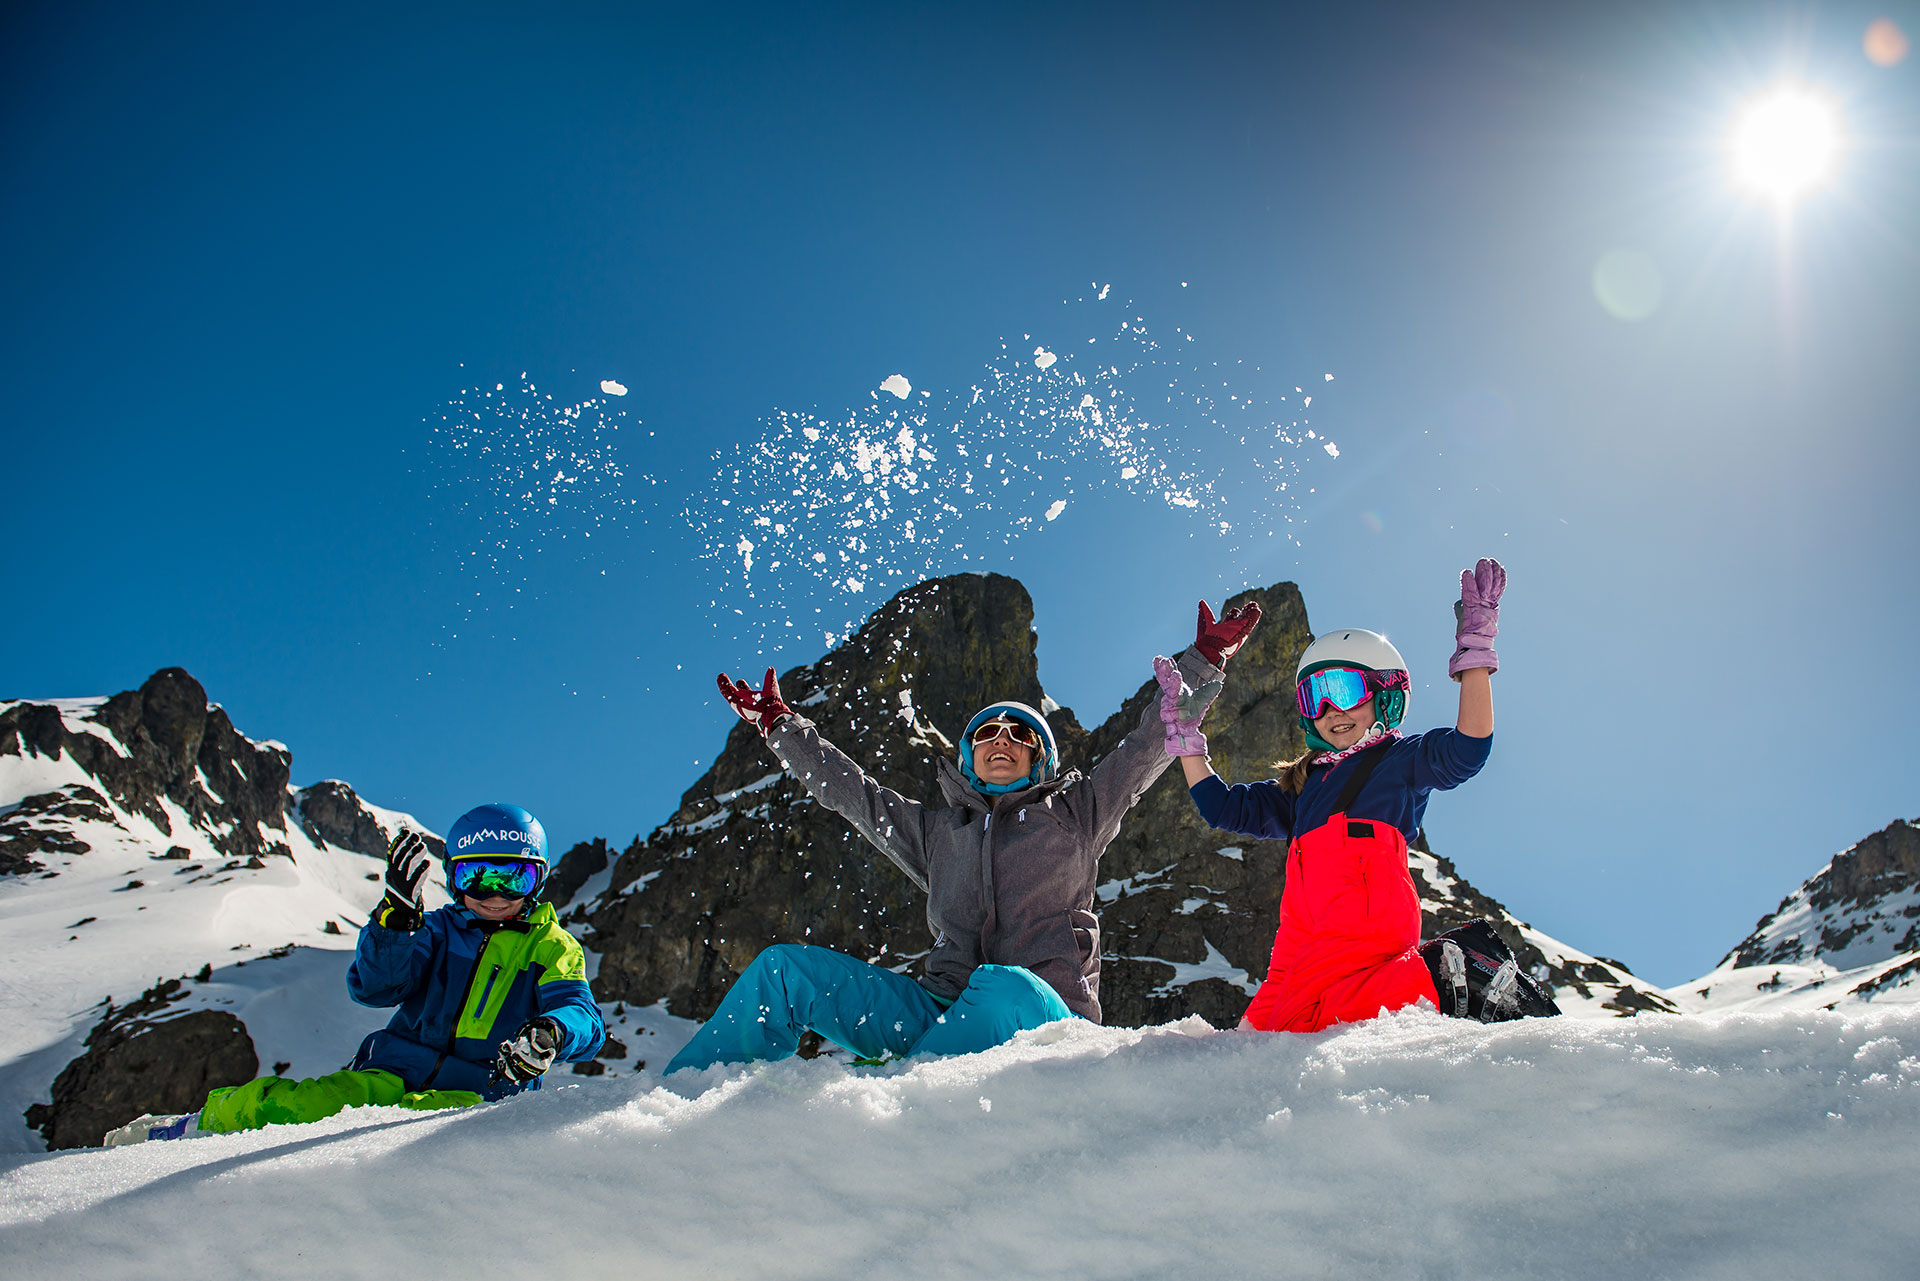 Chamrousse activity winter family mountain resort grenoble isere french alps france - © Images-et-reves.fr